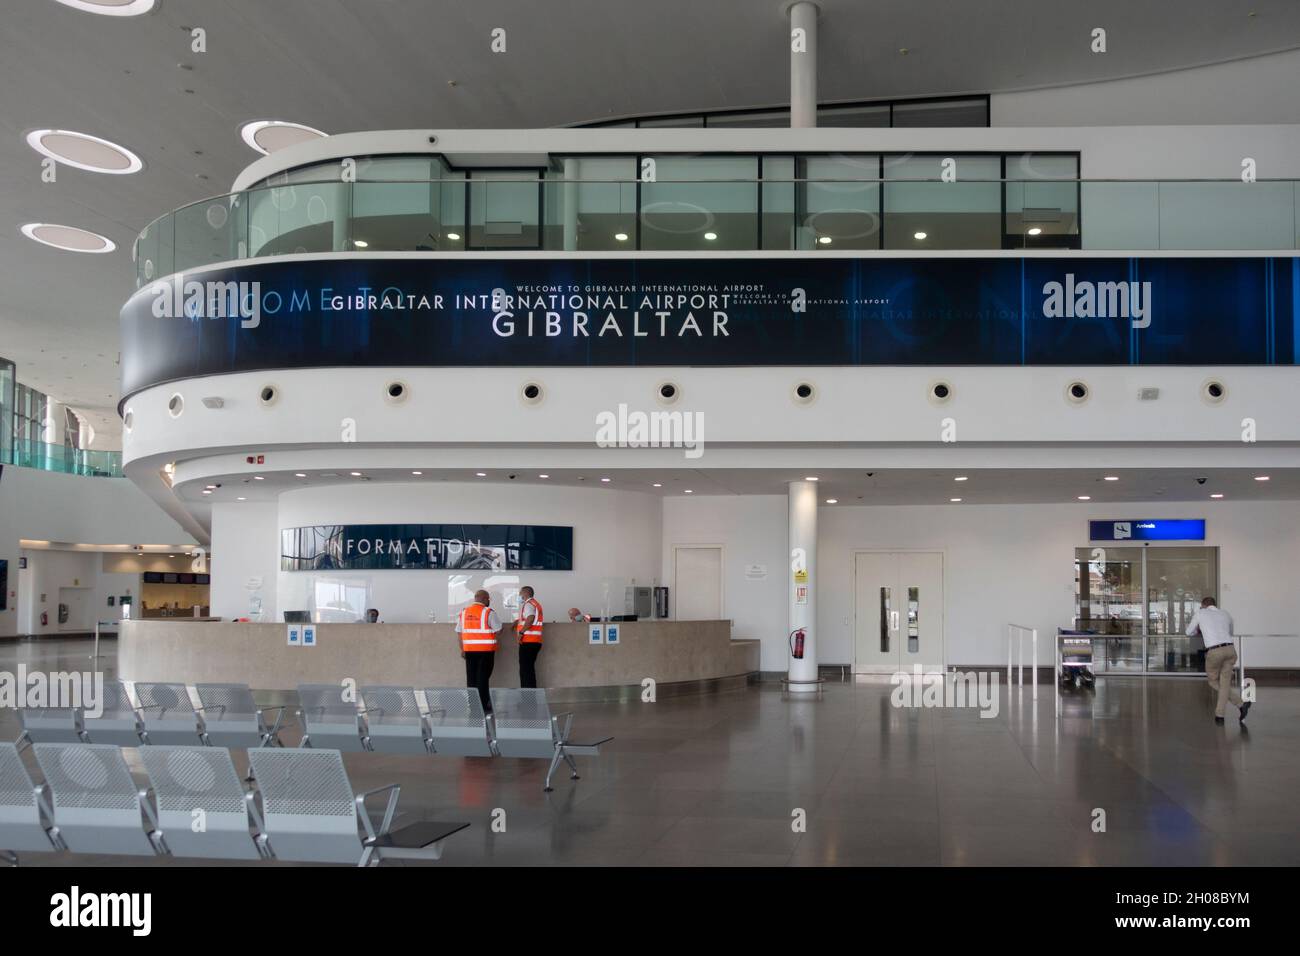 Un espace d'attente presque vide juste à l'intérieur de l'entrée de l'aéroport international de Gibraltar, avec un panneau de bienvenue et un bureau d'information. Banque D'Images